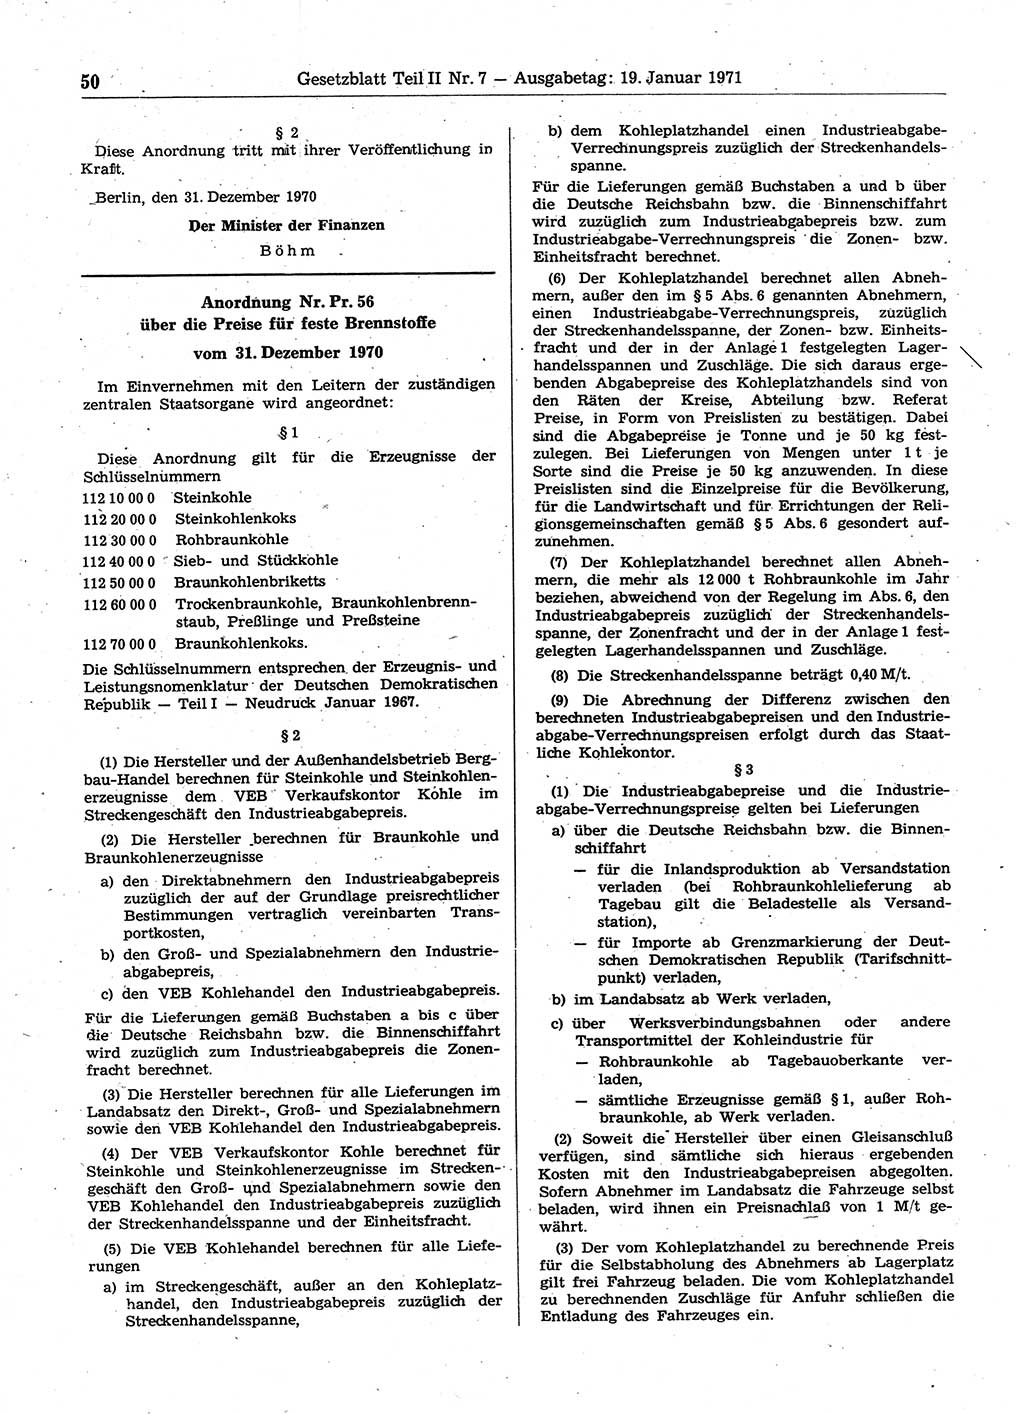 Gesetzblatt (GBl.) der Deutschen Demokratischen Republik (DDR) Teil ⅠⅠ 1971, Seite 50 (GBl. DDR ⅠⅠ 1971, S. 50)